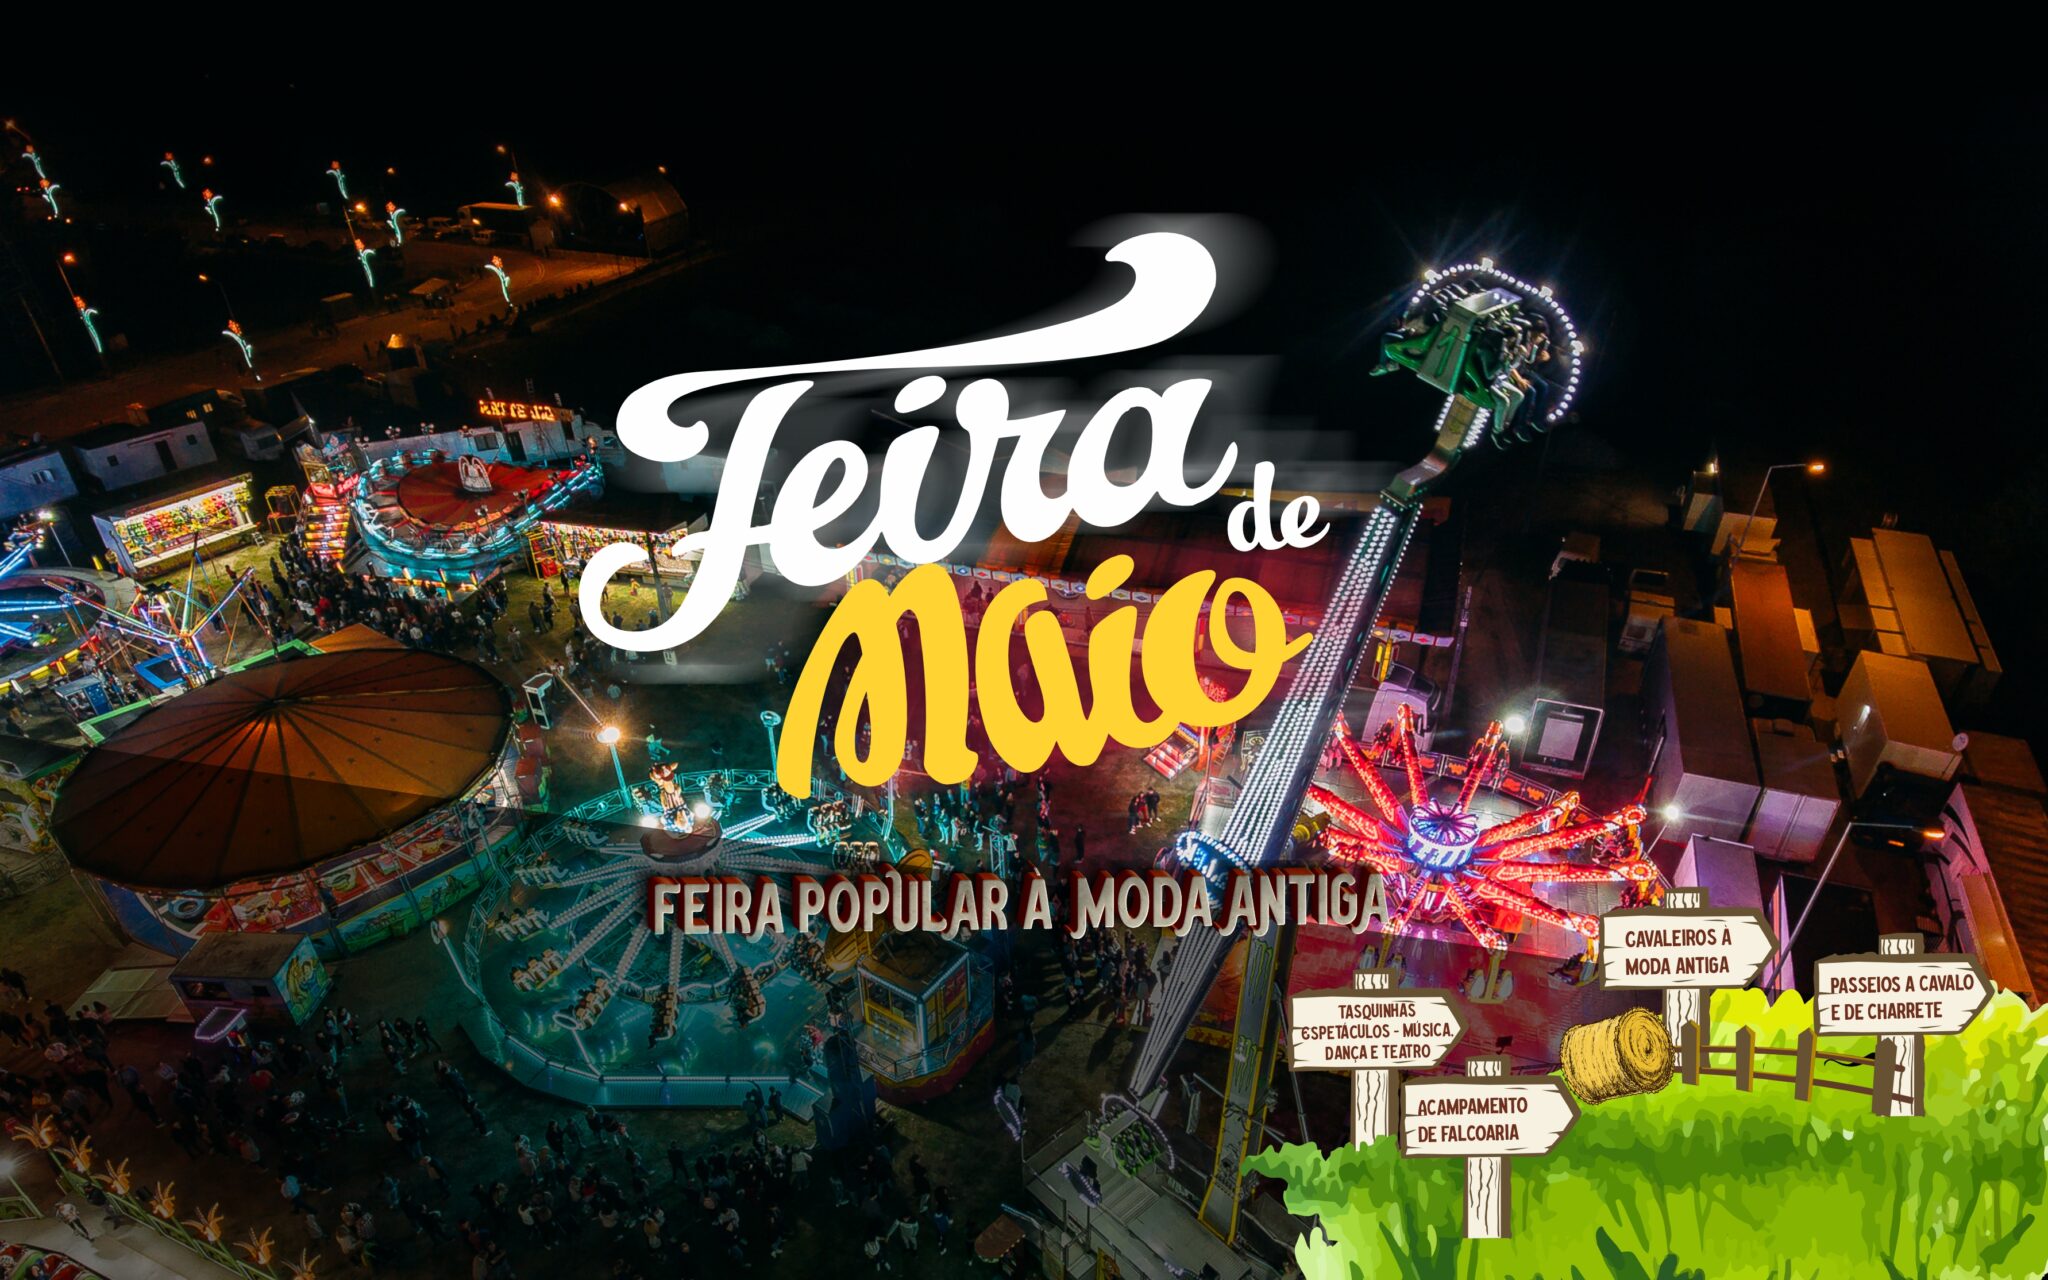 Visite a Feira de Maio no próximo fim de semana em Felgueiras!